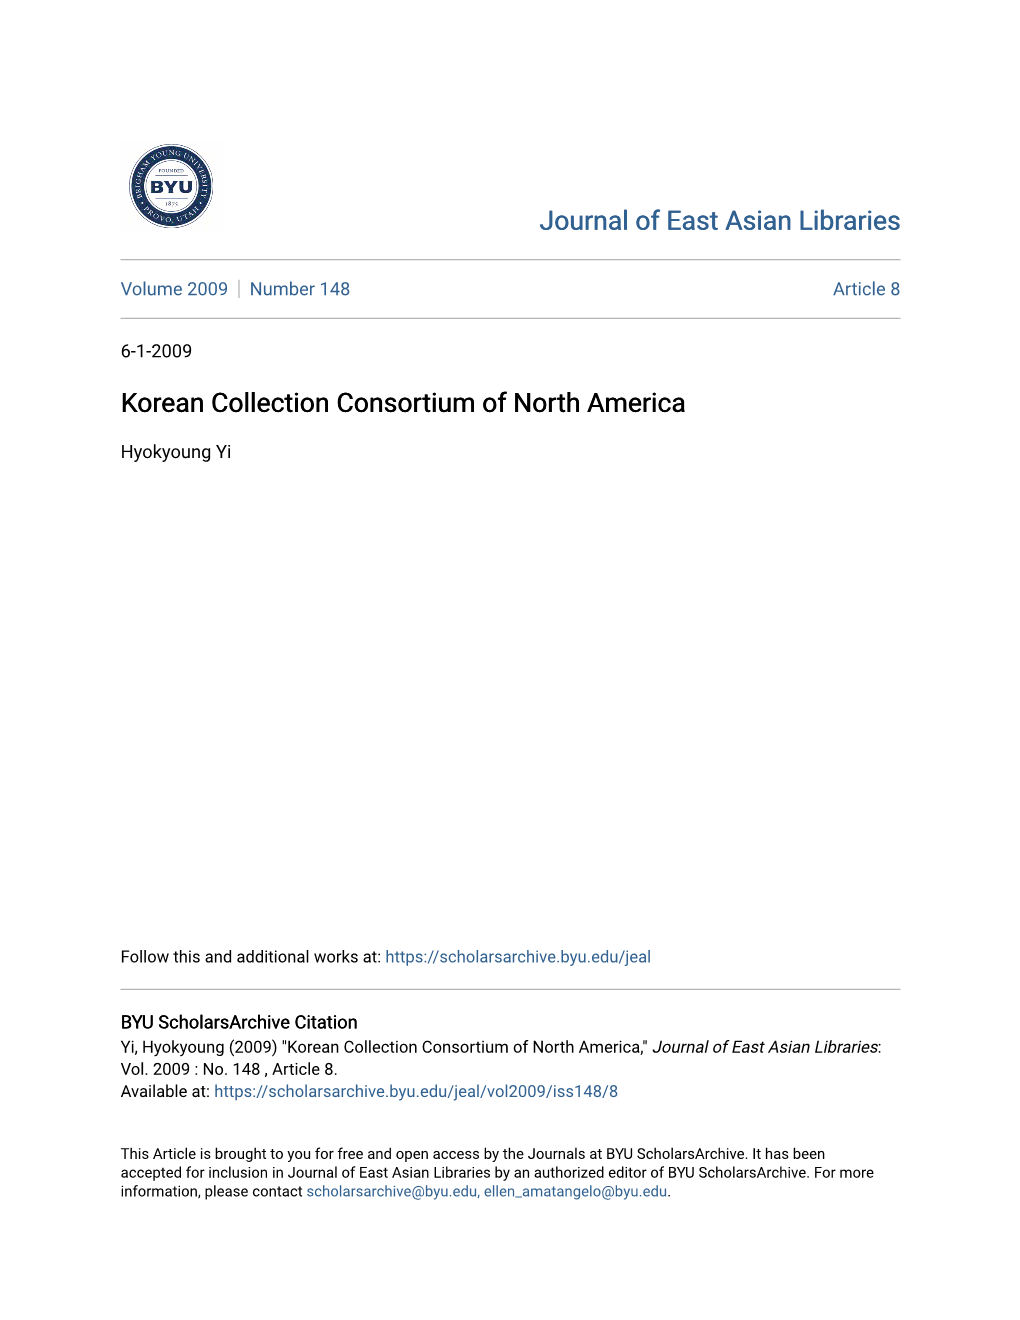 Korean Collection Consortium of North America